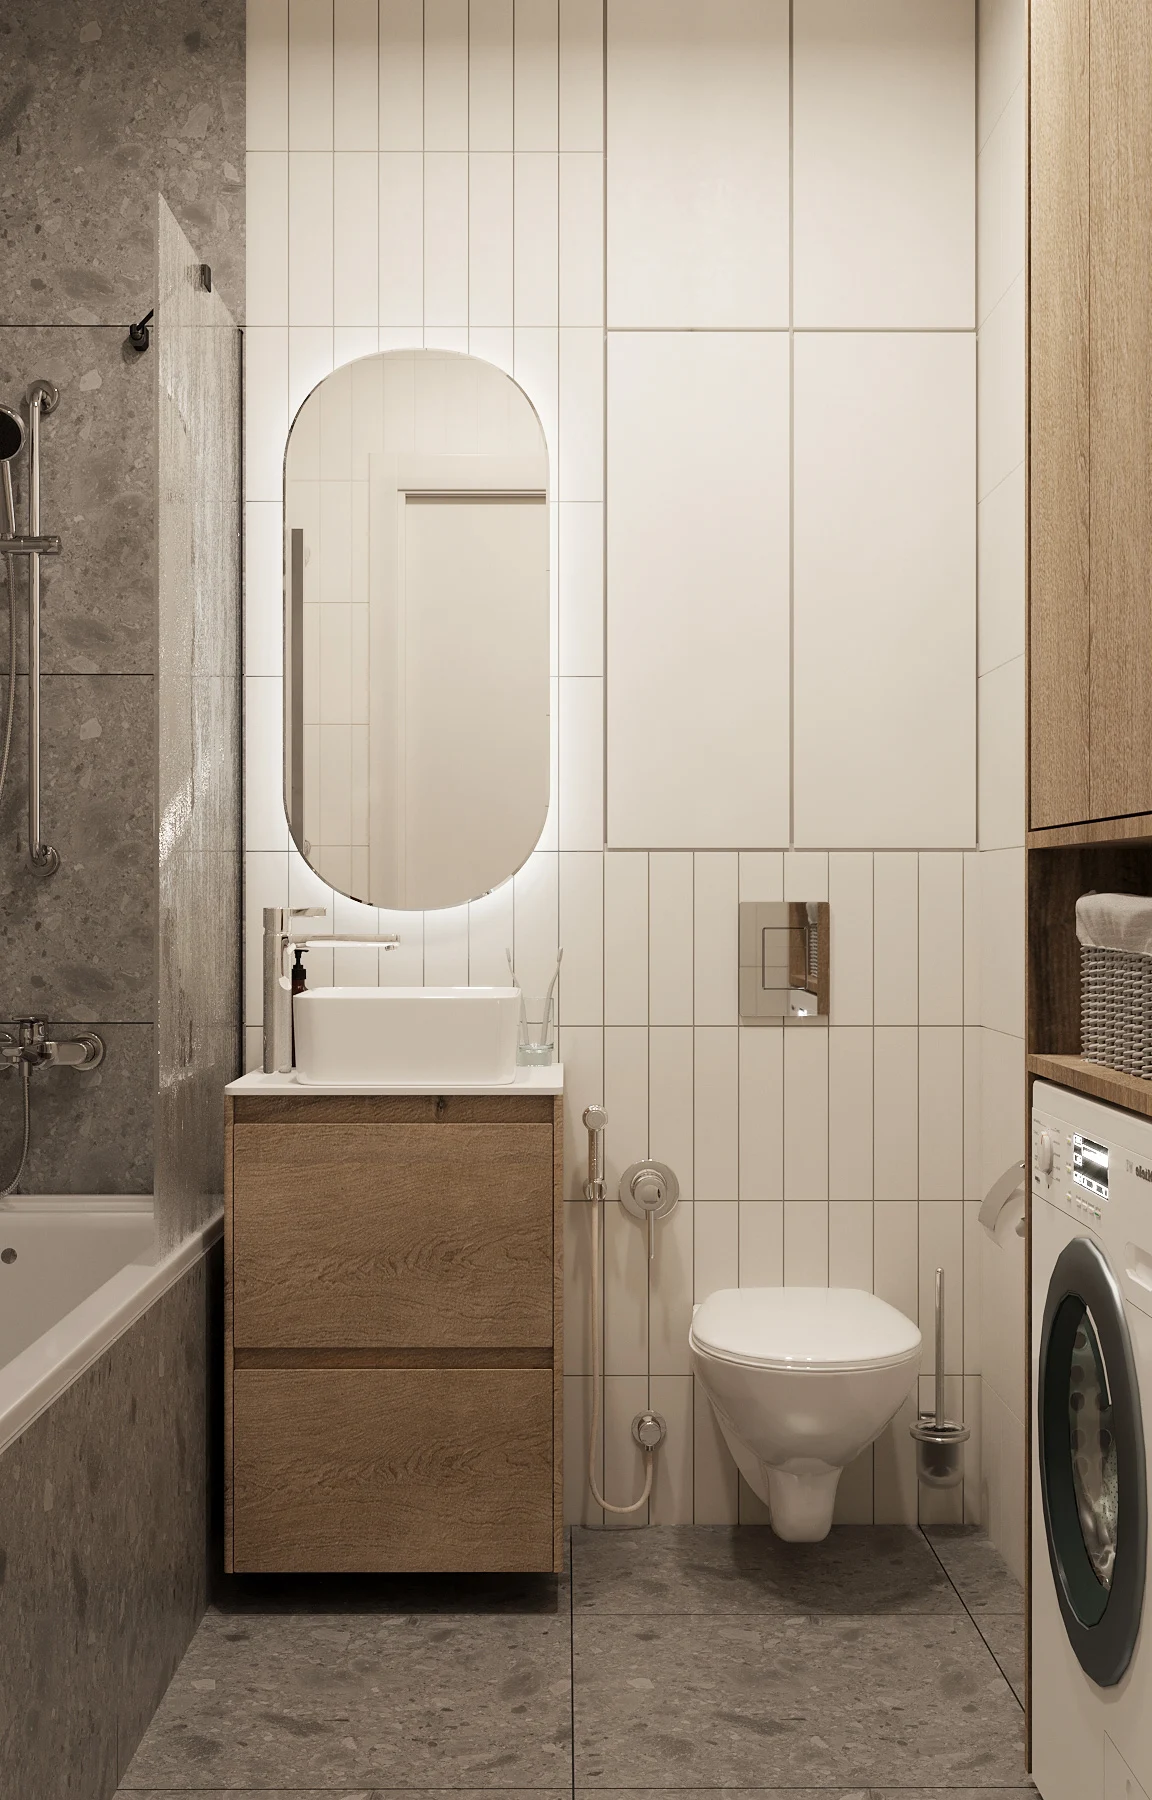 Thiết kế phòng ngủ căn hộ chung cư 57m2 chuẩn phong cách Bắc Âu